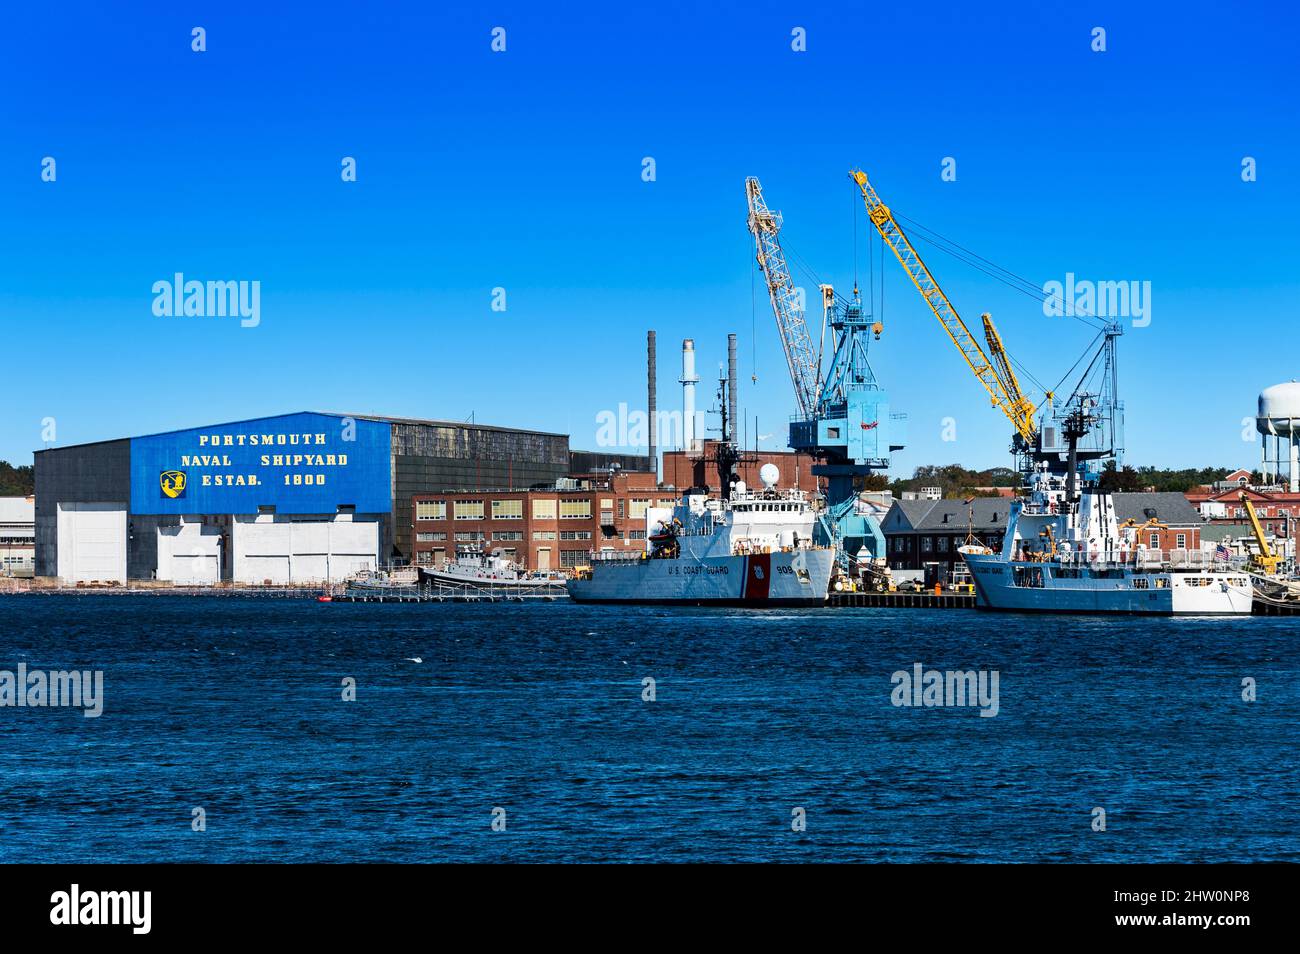 Astillero Naval DE EE.UU. En Portsmouth, New Hampsahire, Estados Unidos. Foto de stock